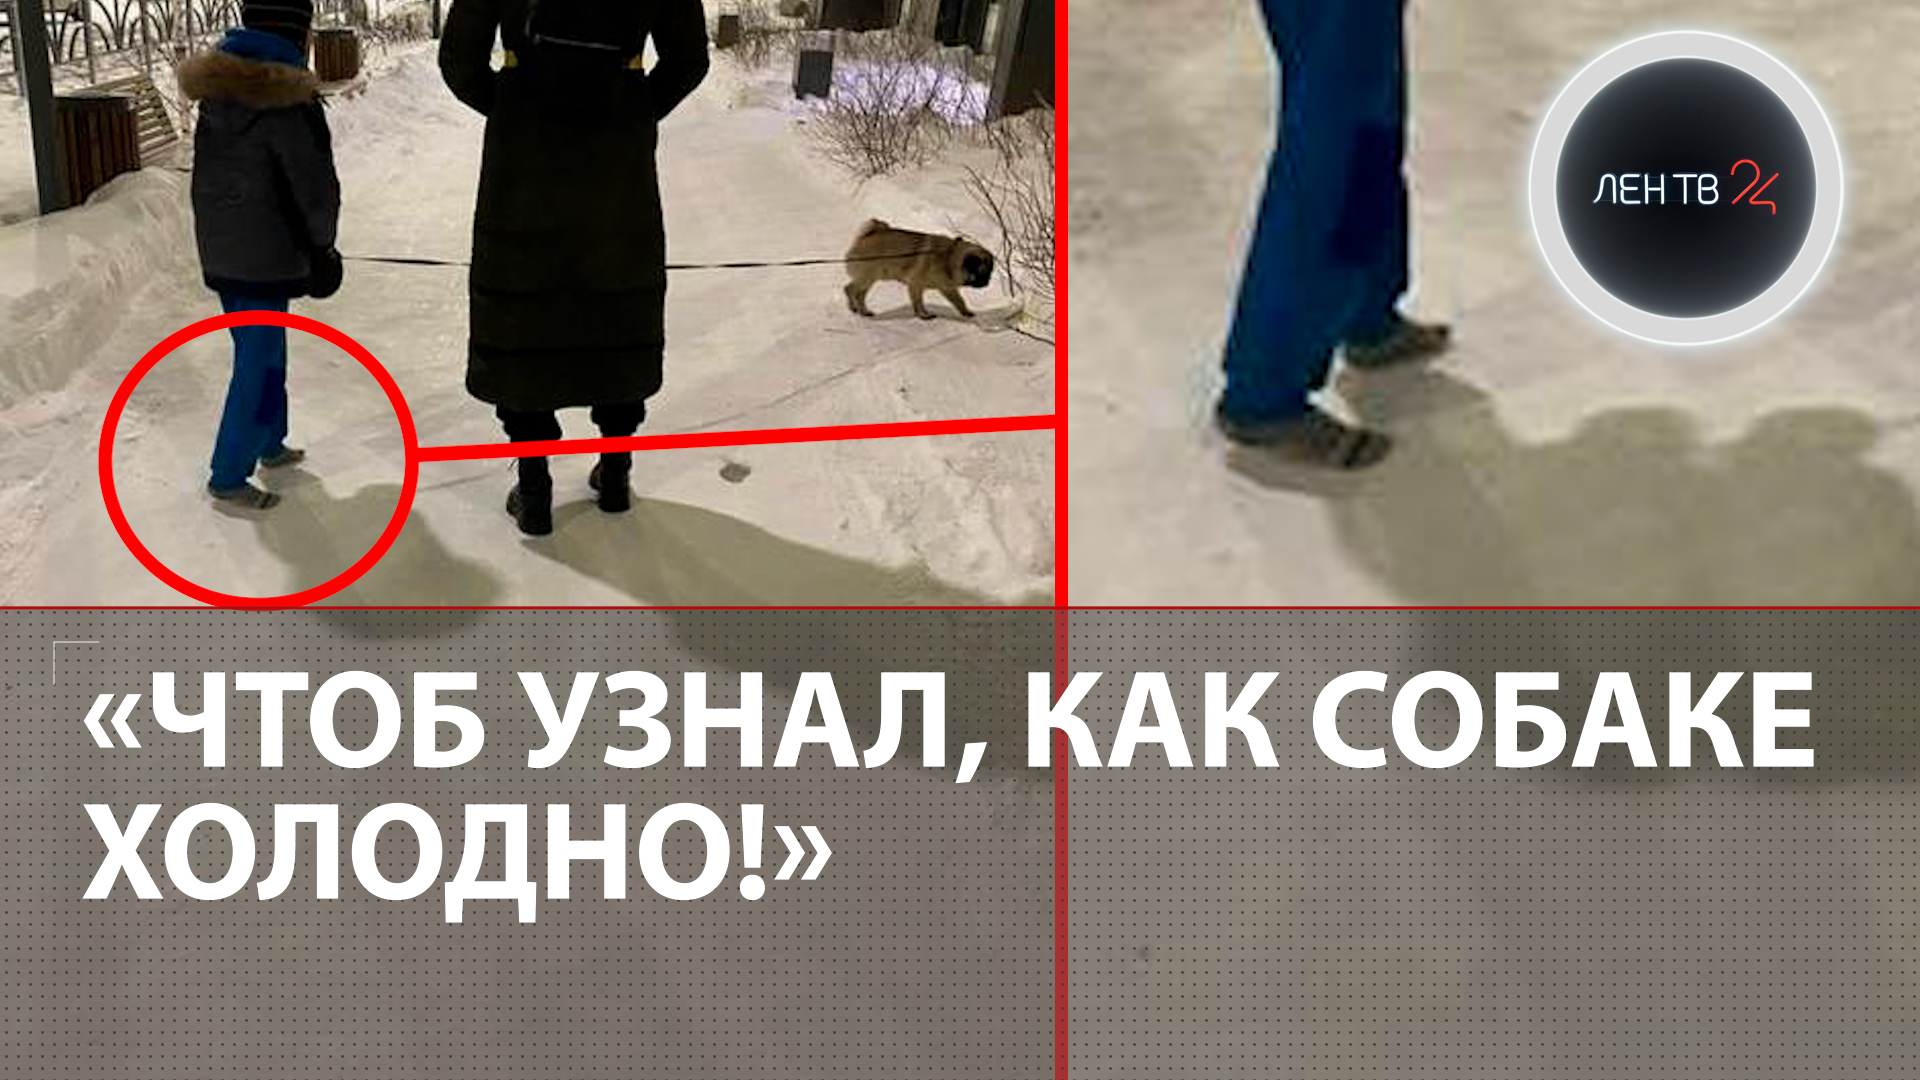 Босой ребенок гуляет в мороз: в Екатеринбурге мать решила жестко проучить сына из-за собаки